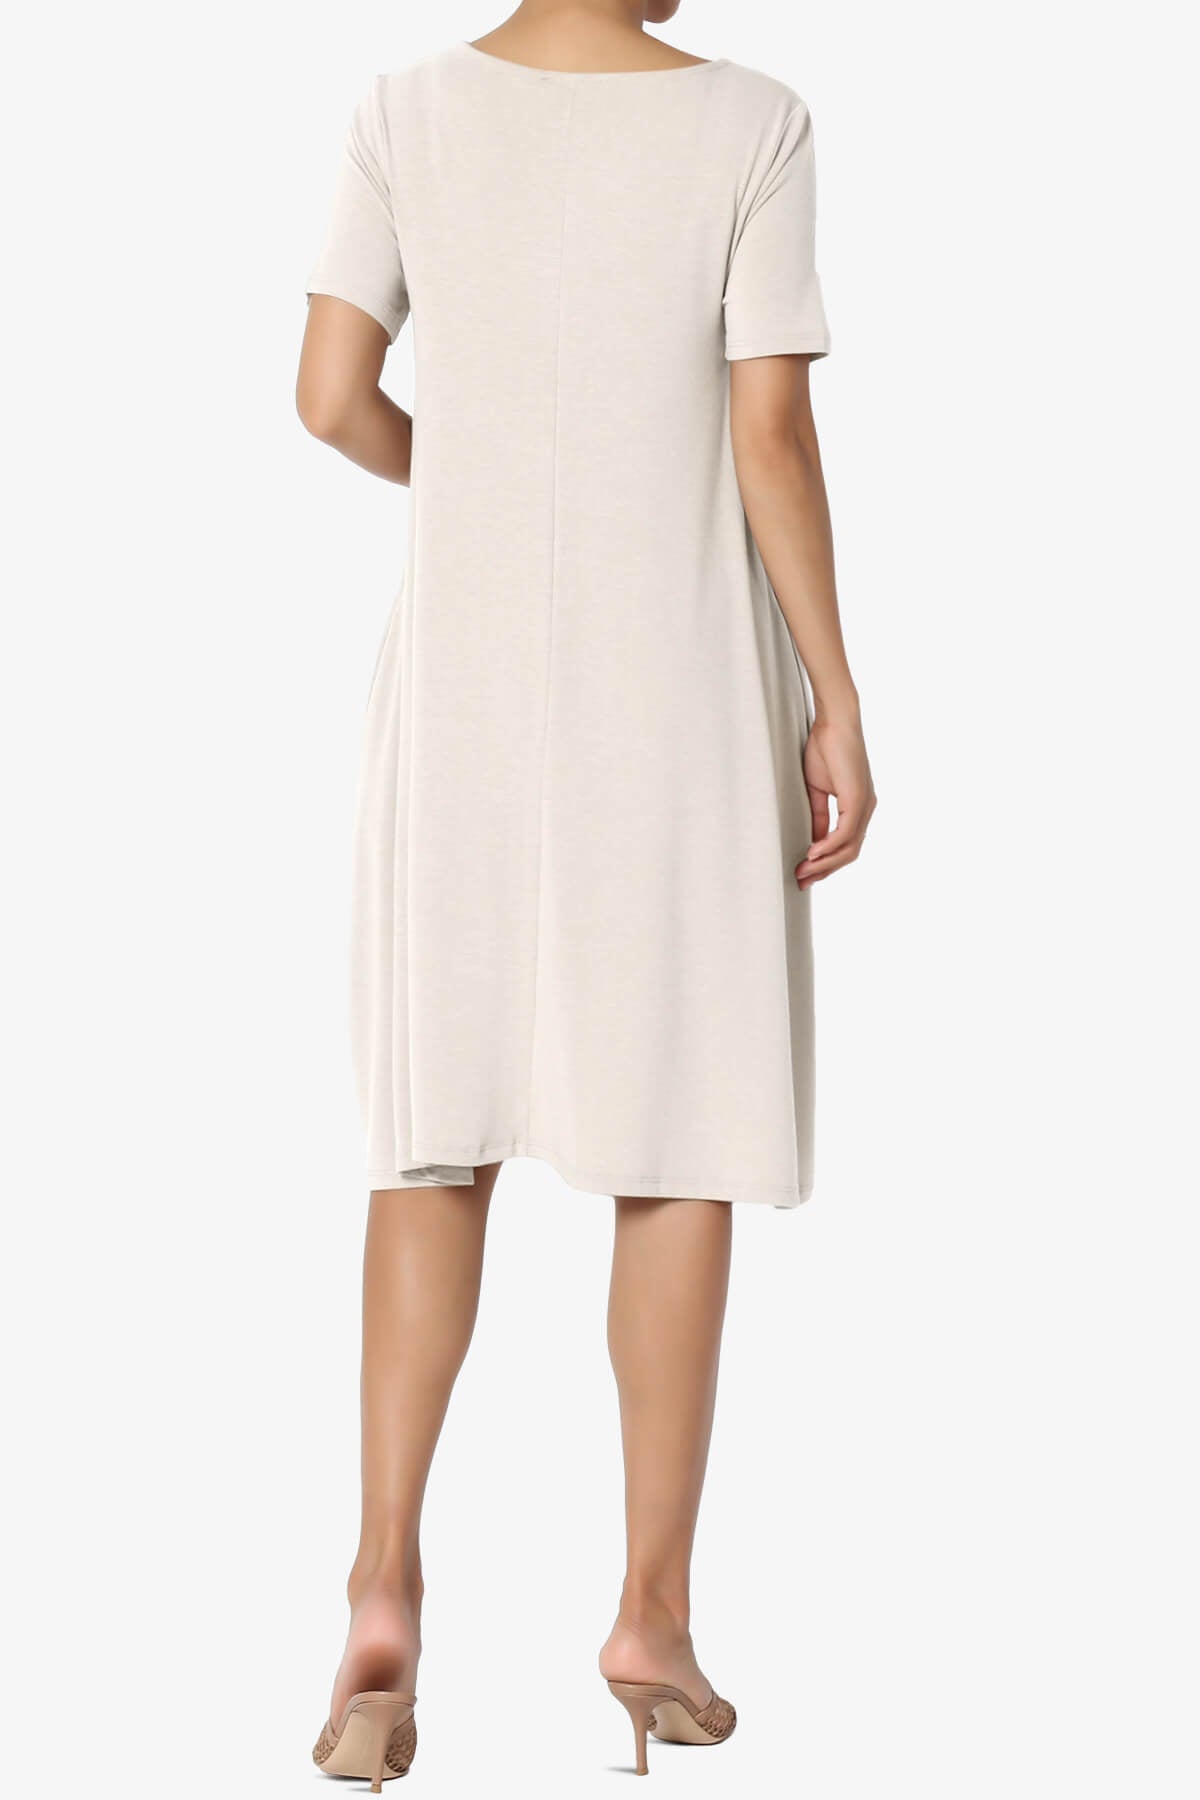 Allie Short Sleeve Jersey A-Line Dress SAND BEIGE_2